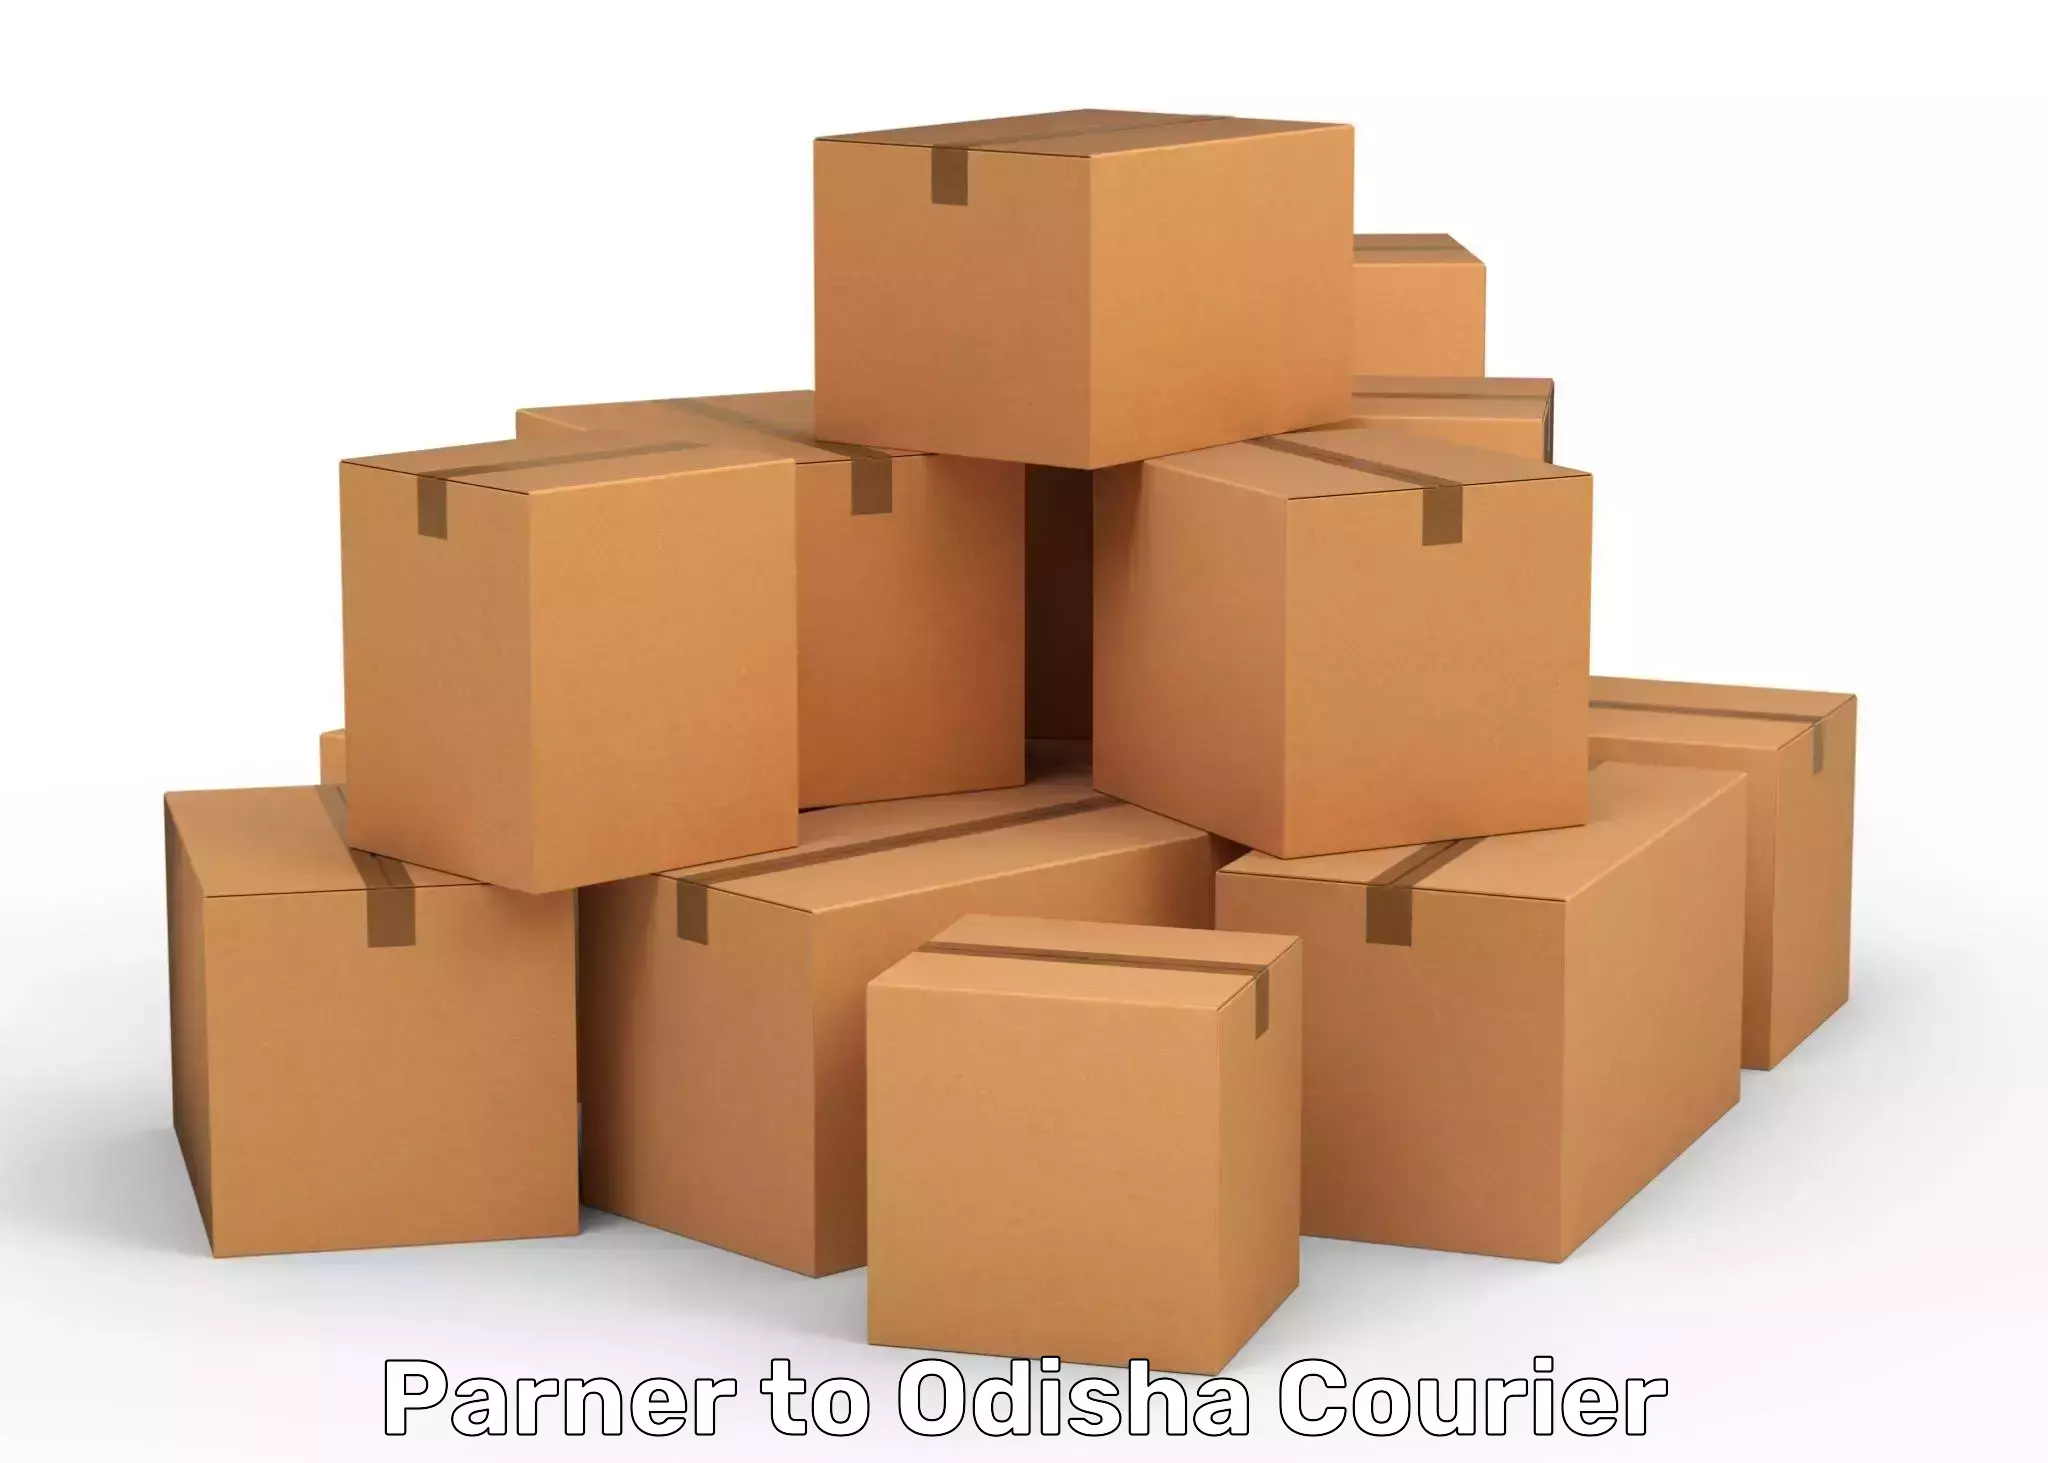 Specialized shipment handling Parner to Kendujhar